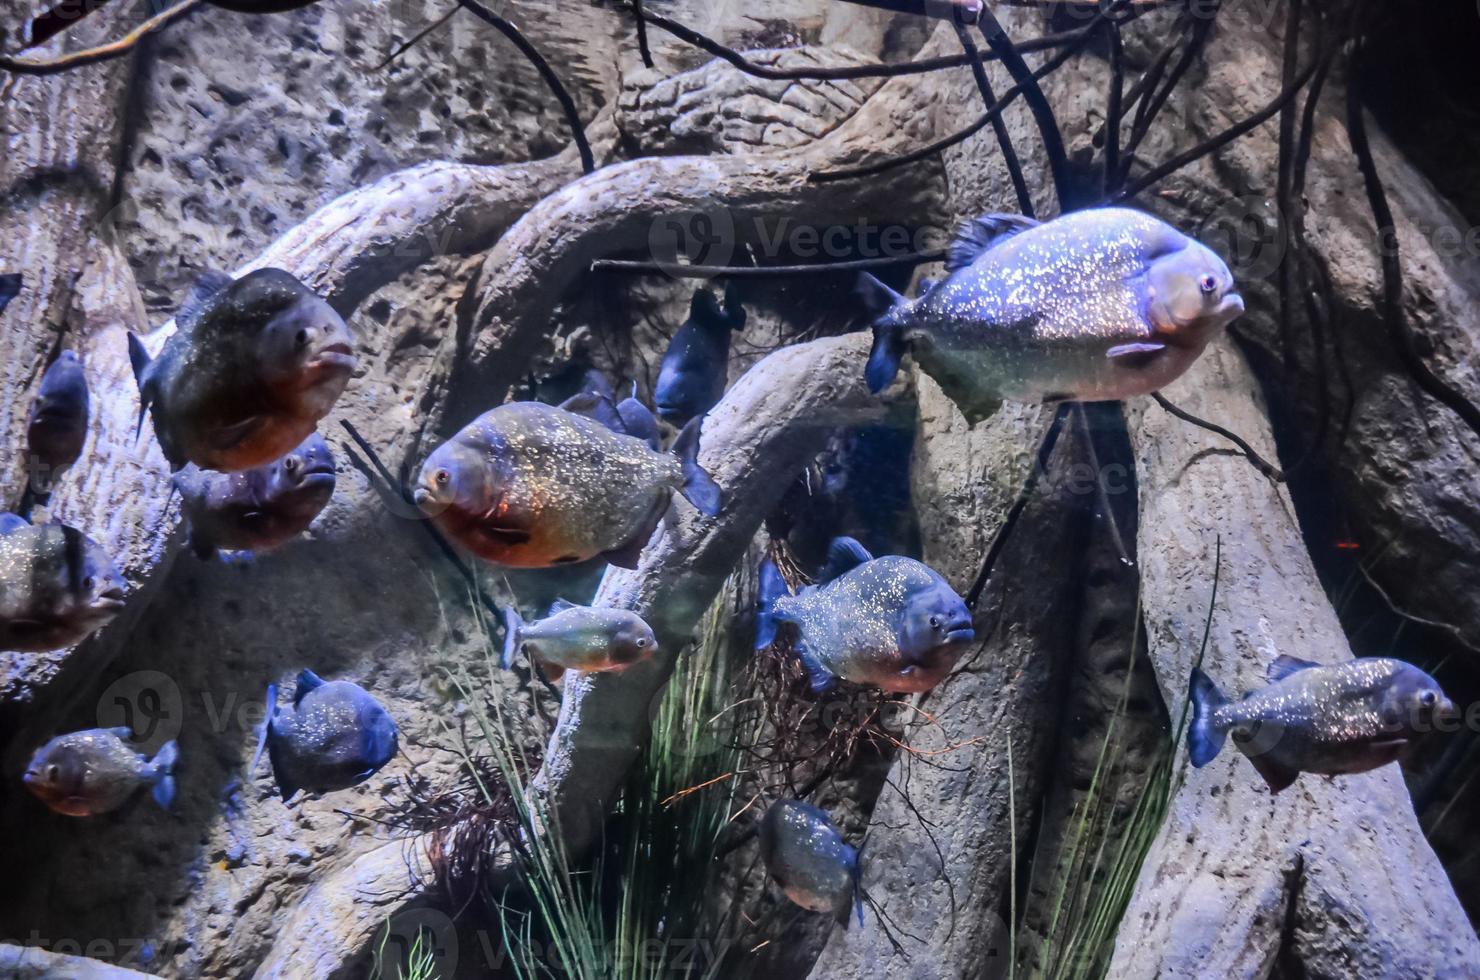 piranhas no aquário foto